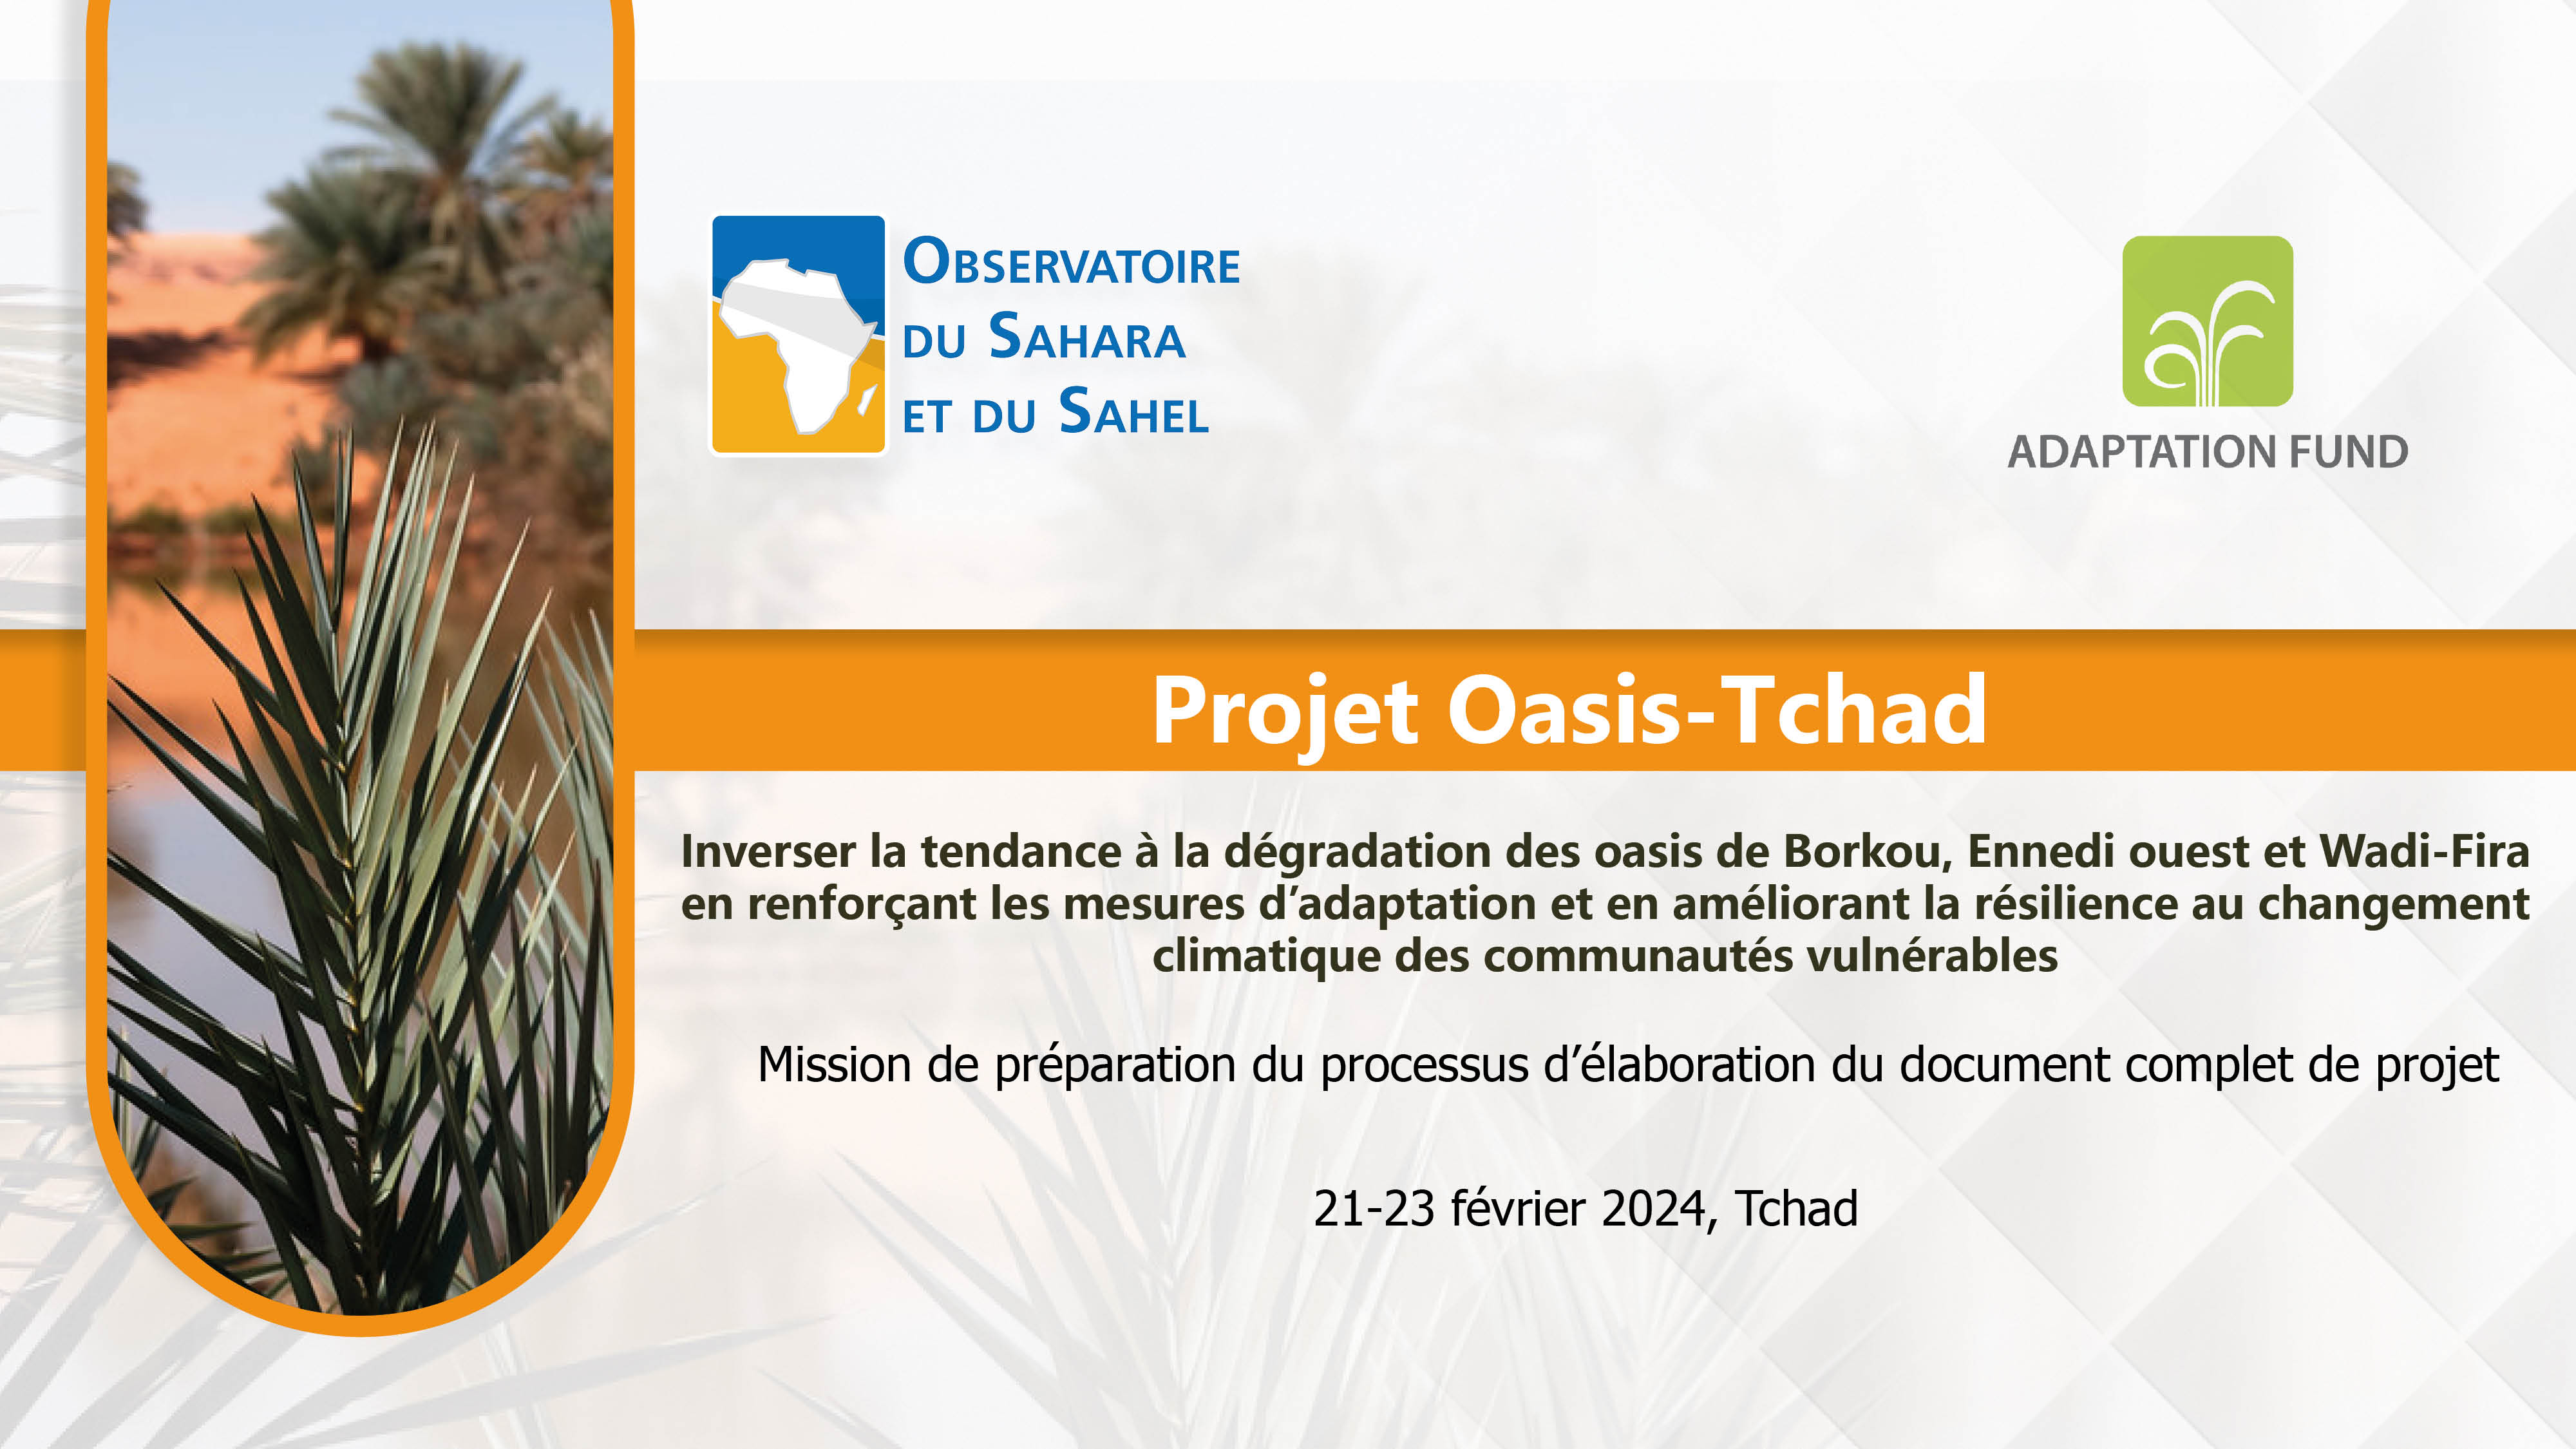  Mission préparatoire du projet Oasis-Chad, 21-23 février 2024